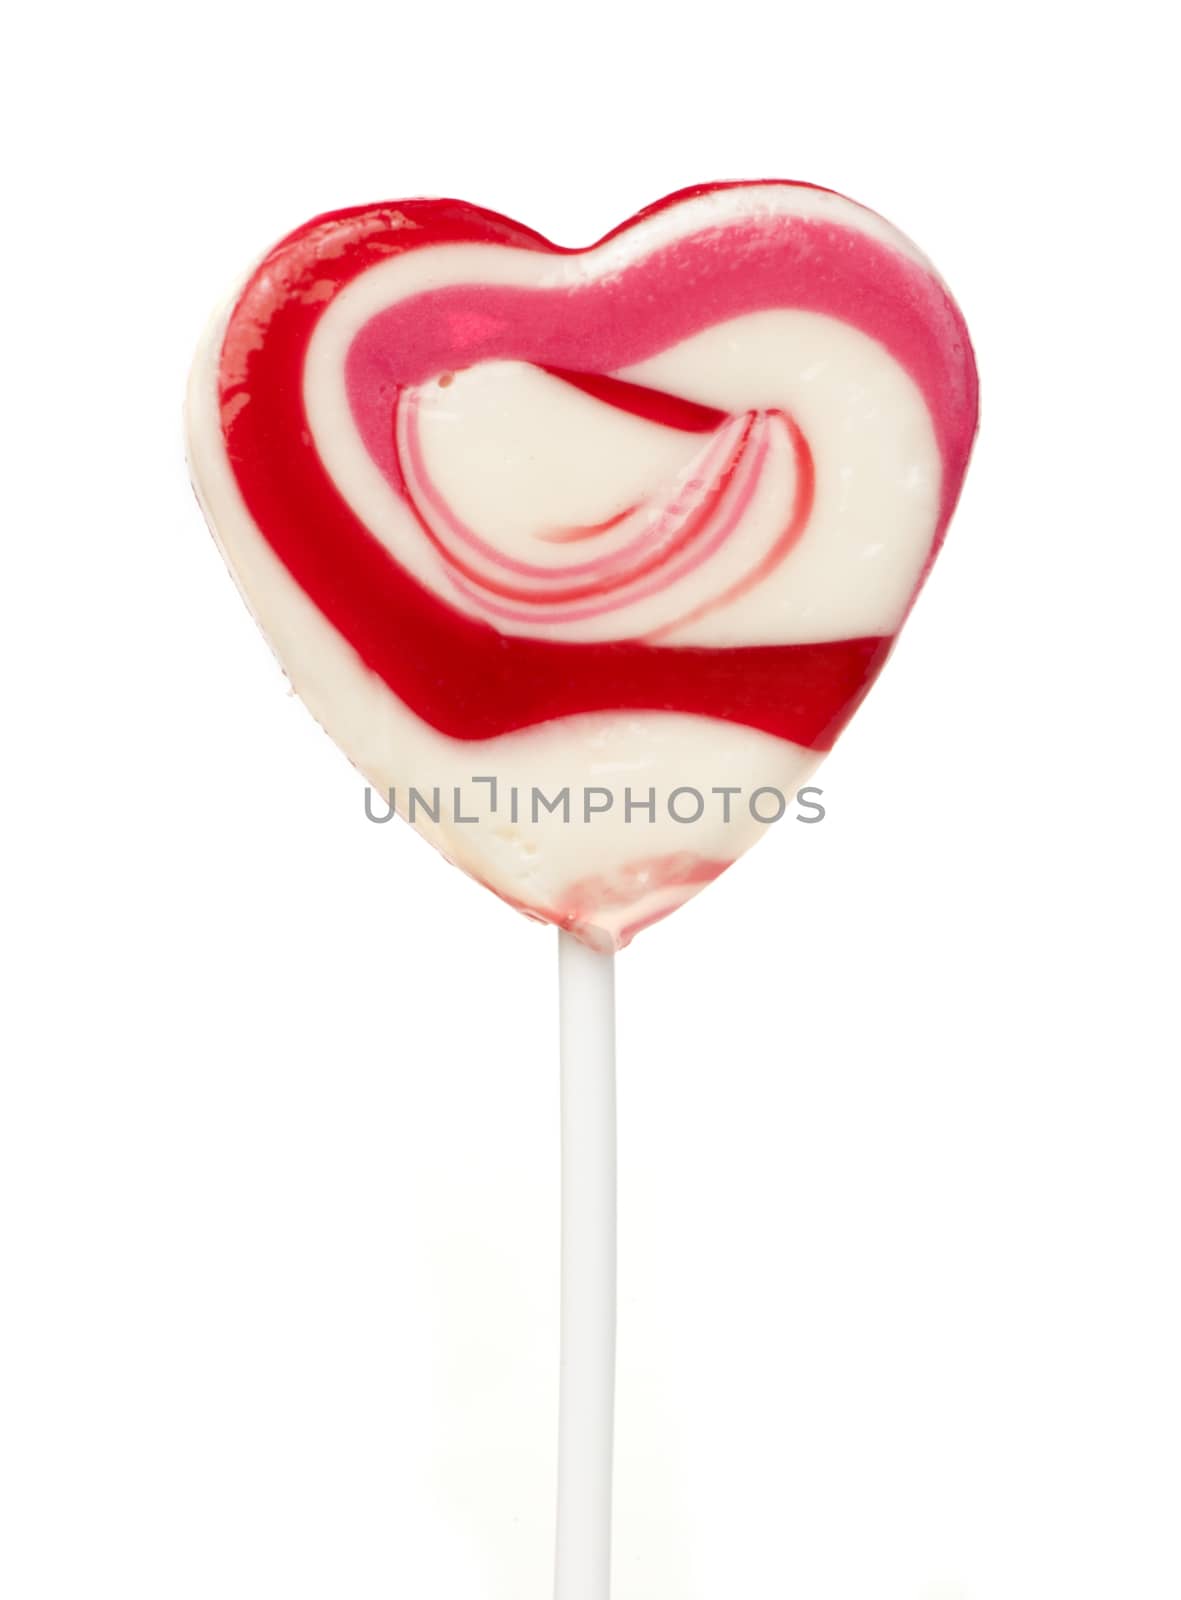 Pink lollipop heart-shaped by deyan_georgiev